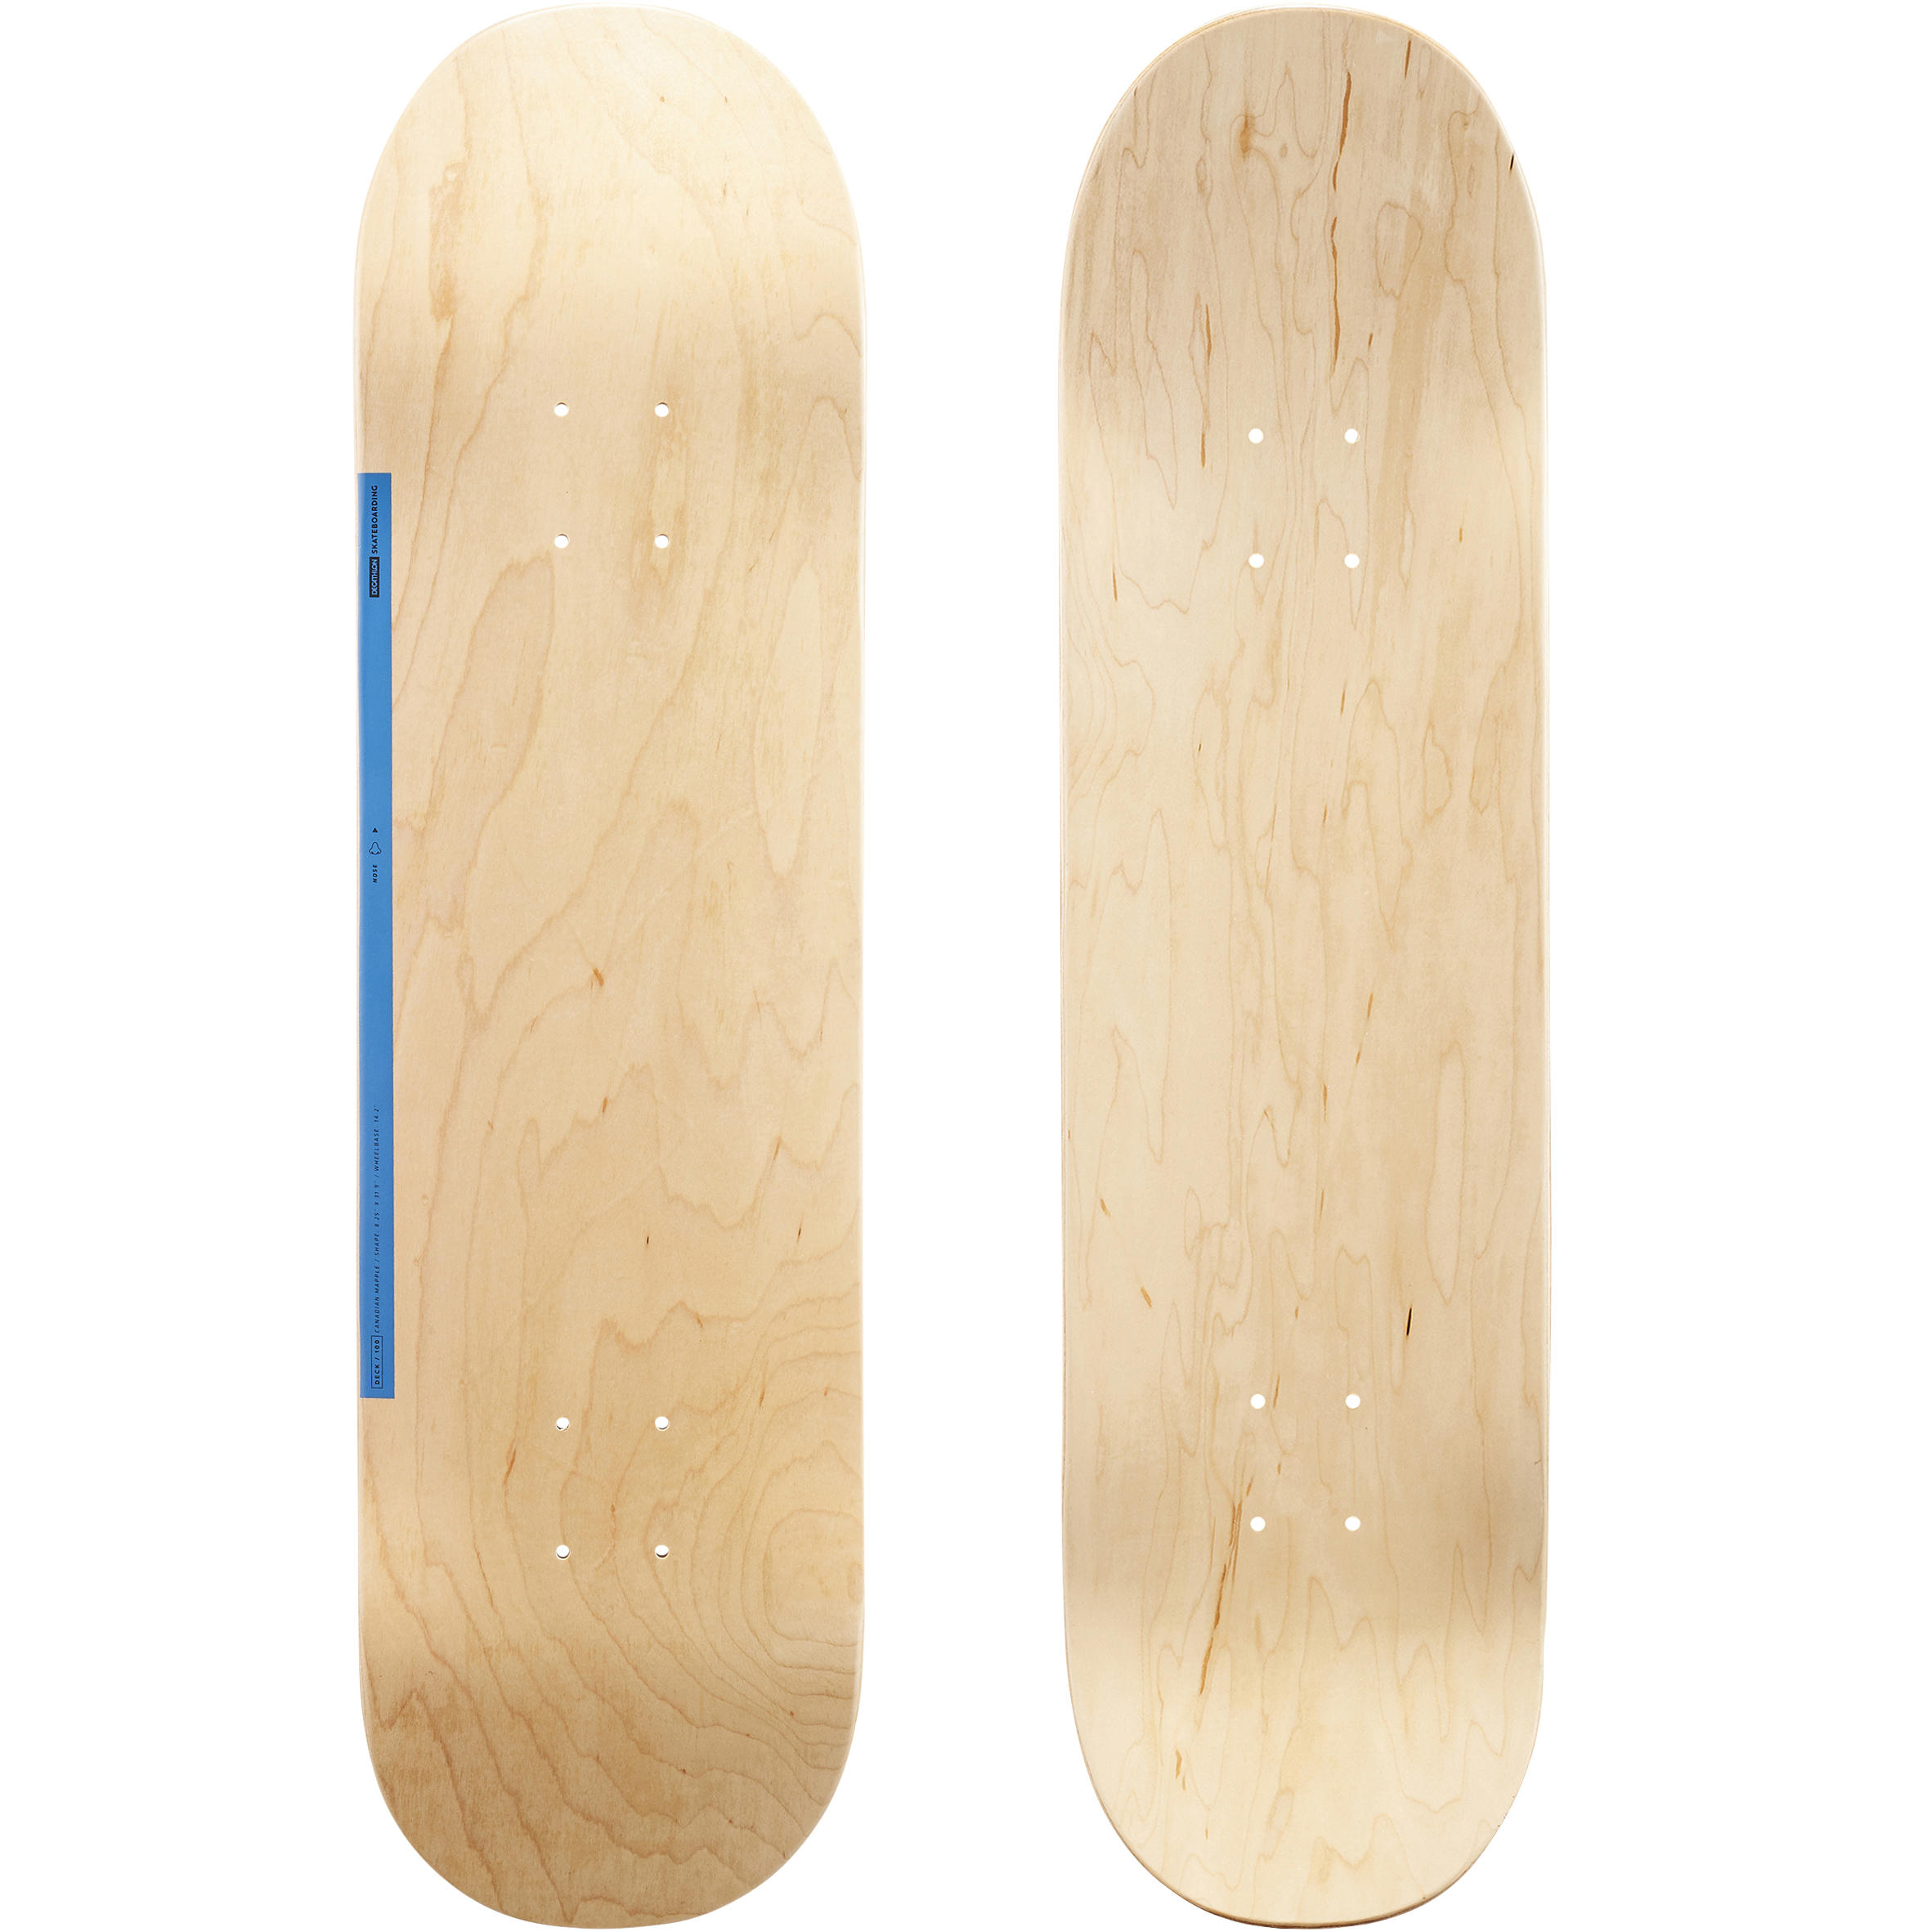 OXELO Maple Skateboard Deck DK100 8.25" - Wood/Blue